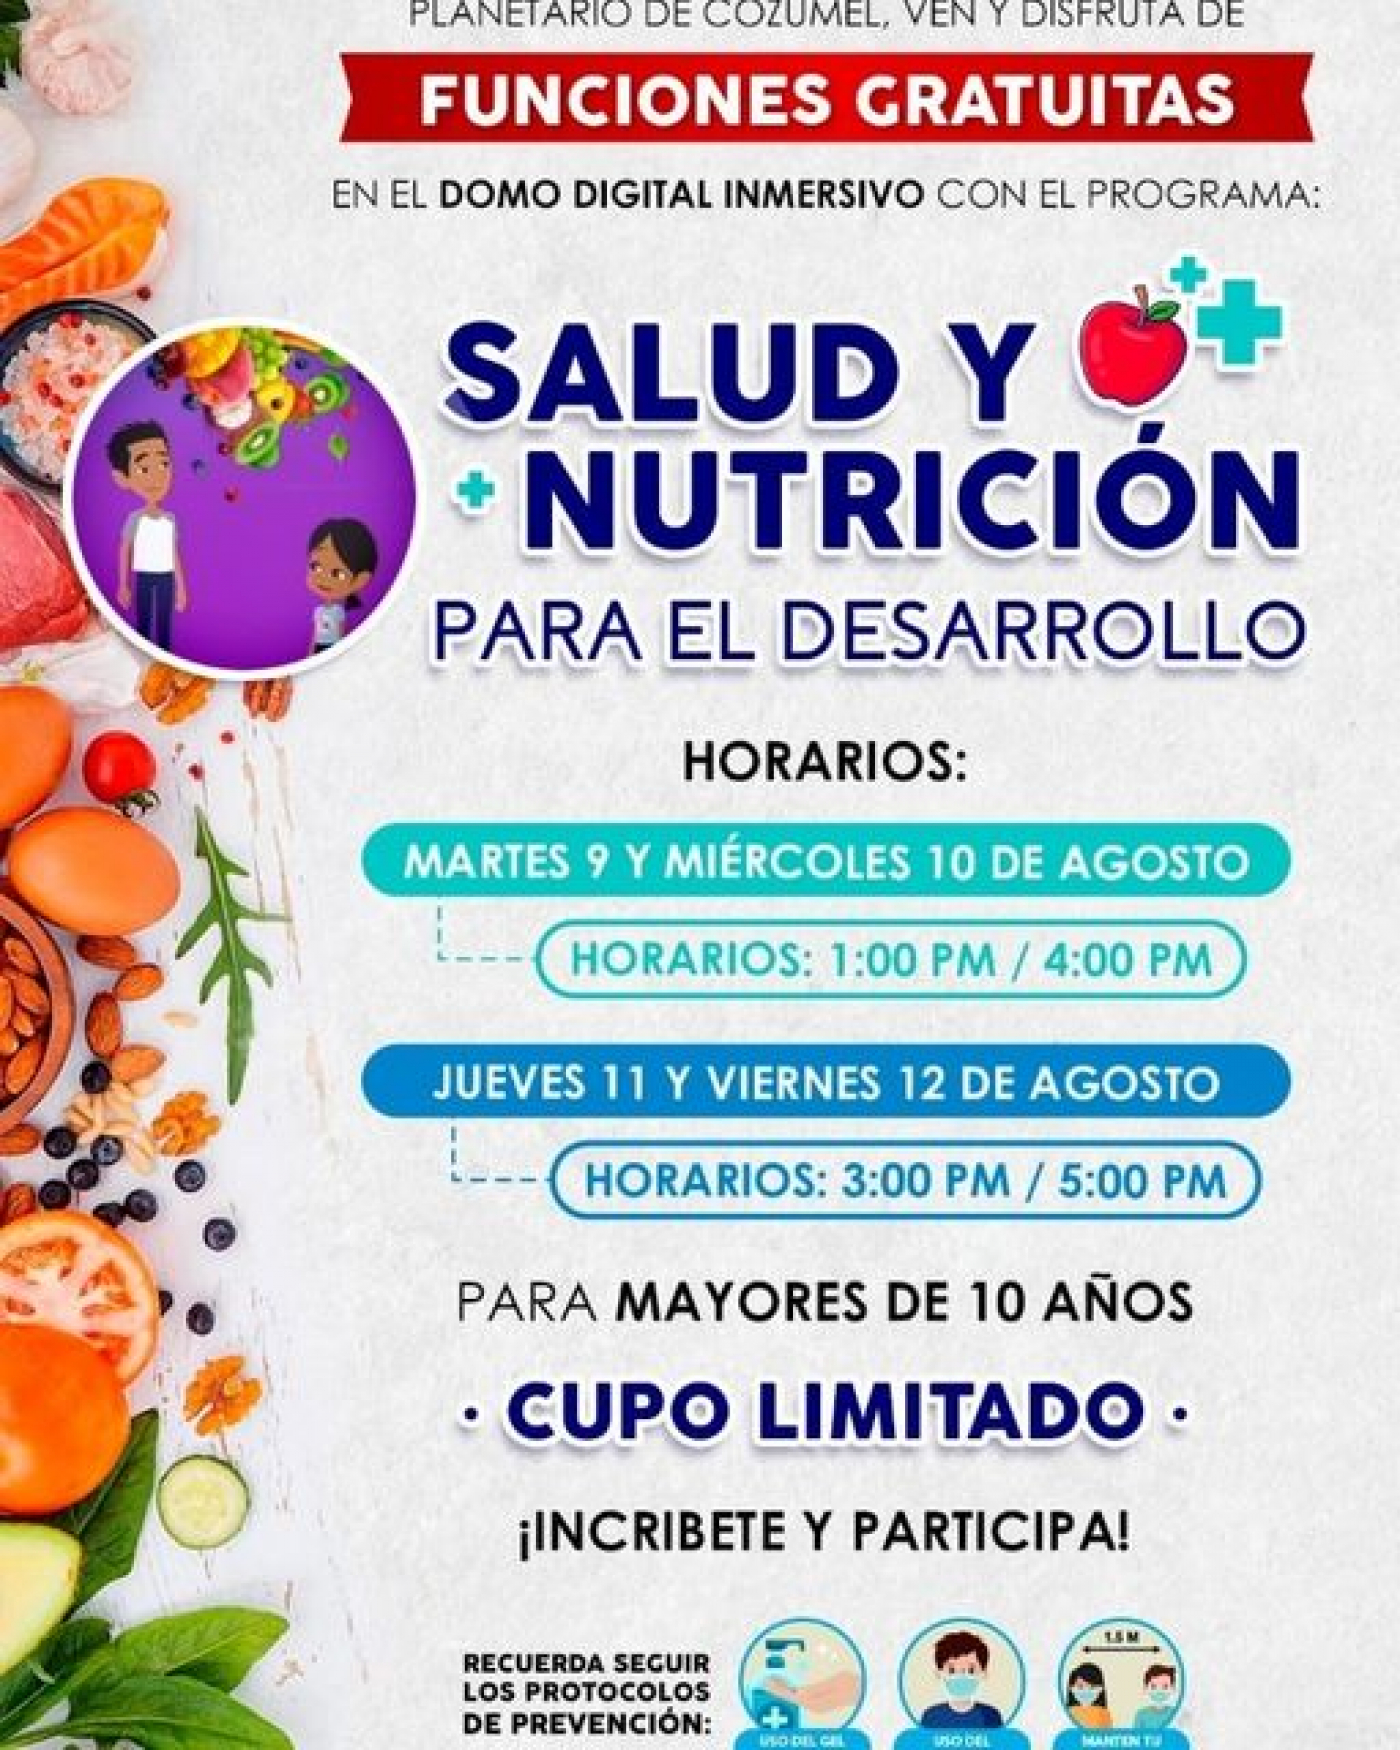 Planetario de Cozumel inicia festejos por 7° aniversario con actividades gratuitas de salud y nutrición